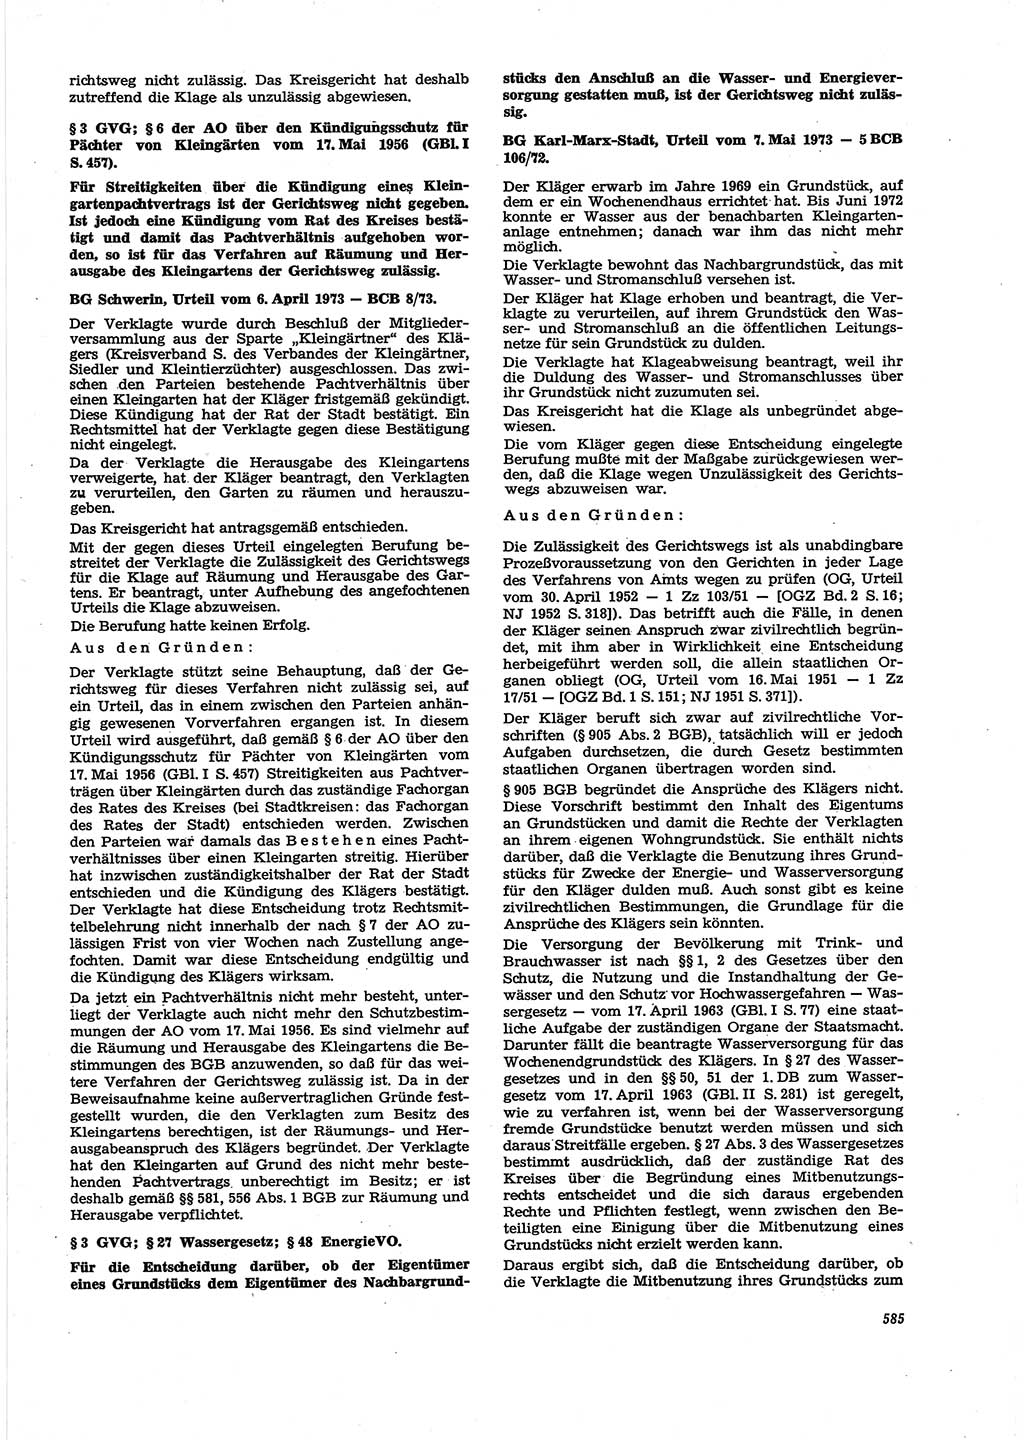 Neue Justiz (NJ), Zeitschrift für Recht und Rechtswissenschaft [Deutsche Demokratische Republik (DDR)], 27. Jahrgang 1973, Seite 585 (NJ DDR 1973, S. 585)